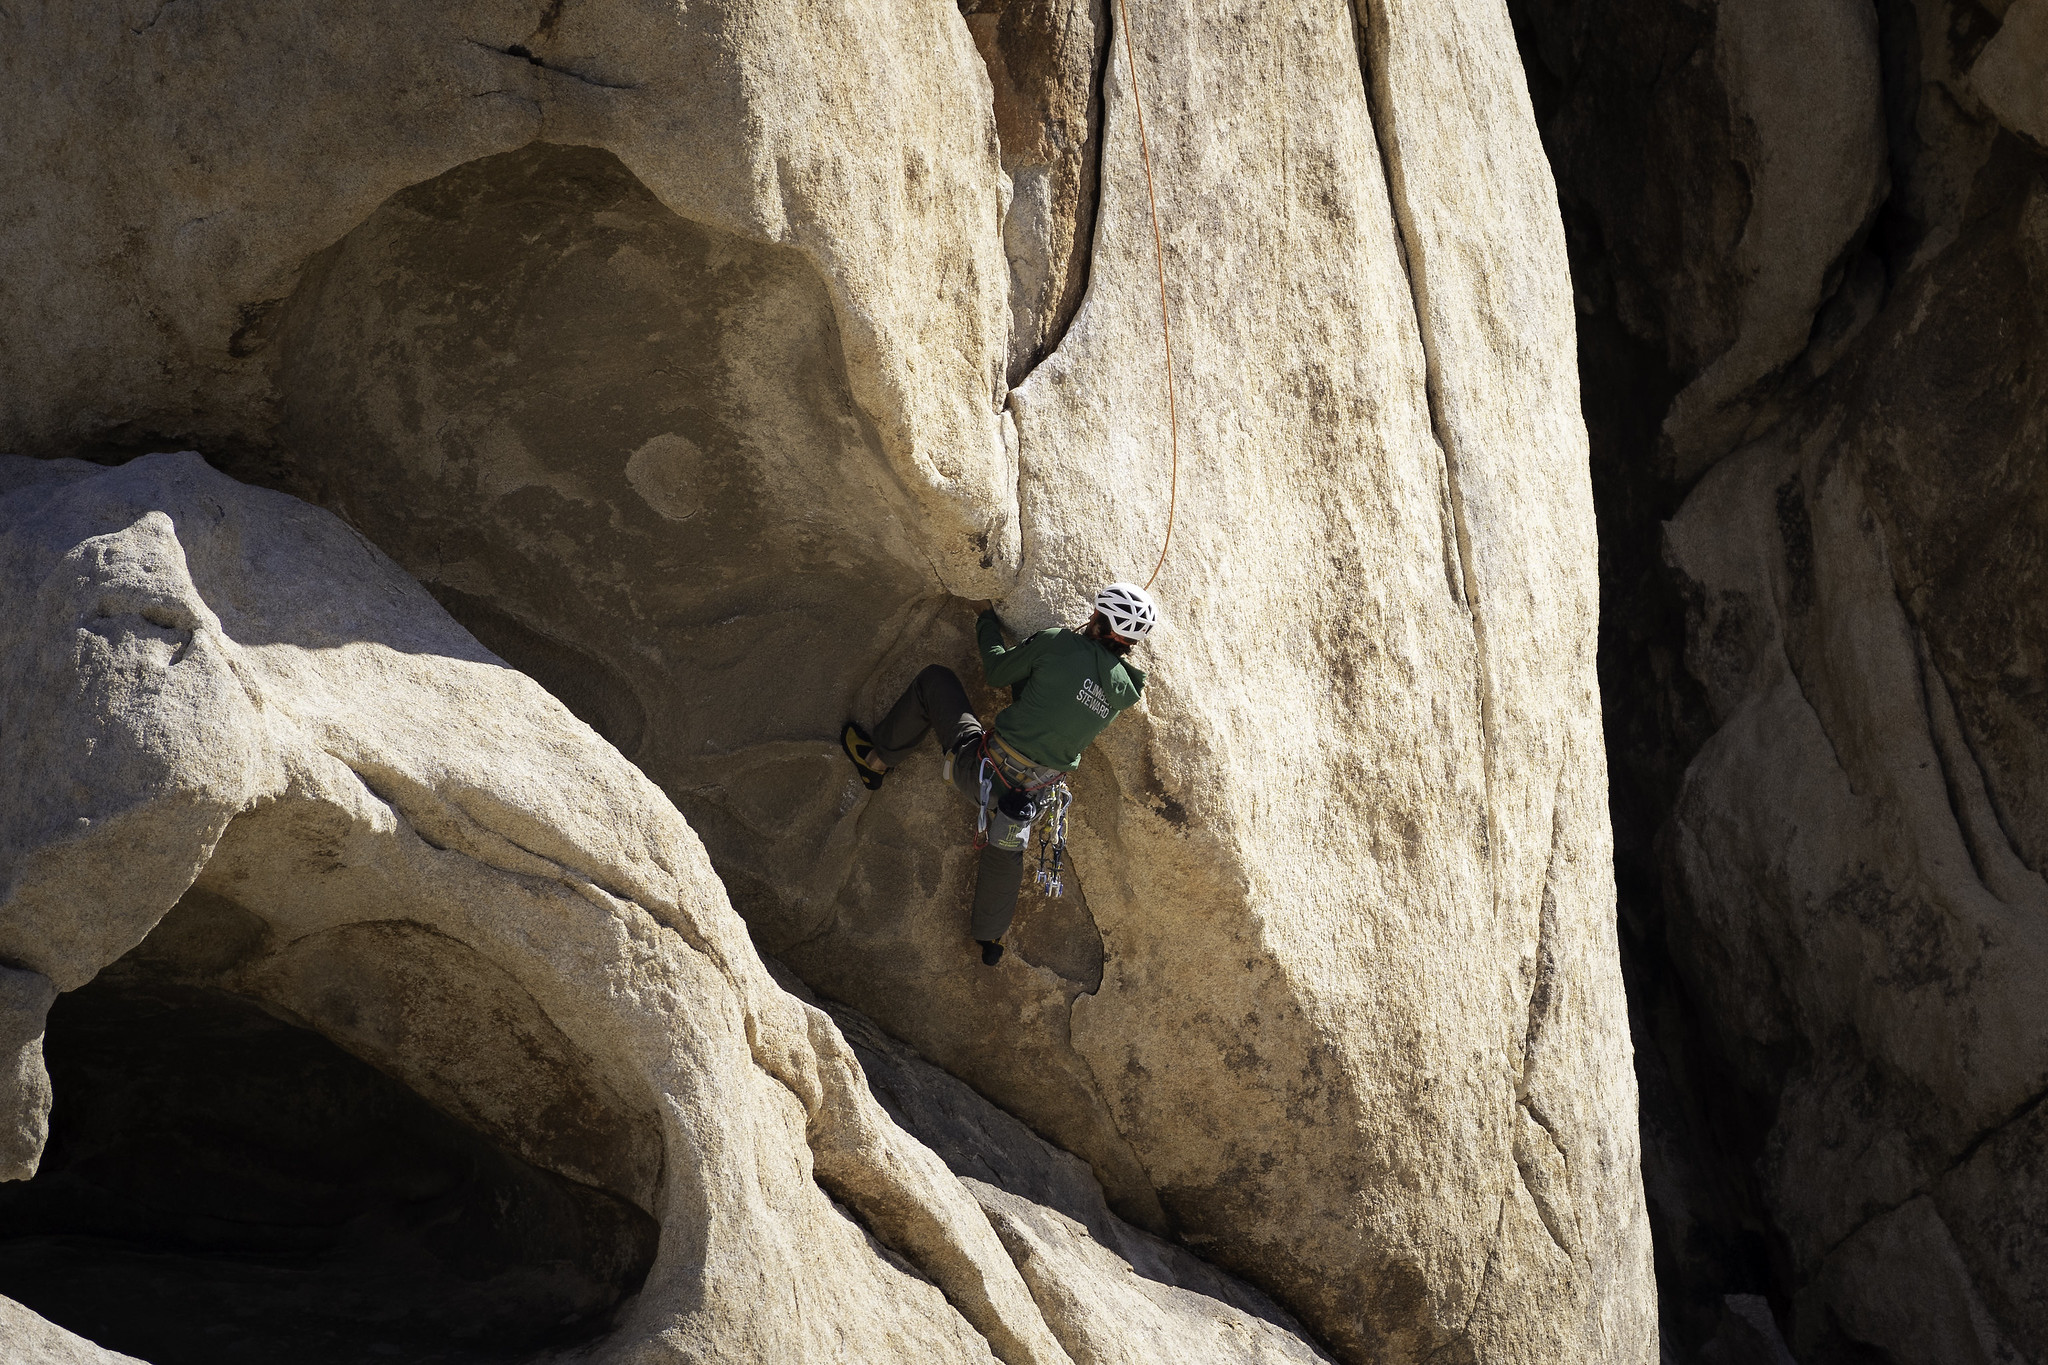 A climber steward in a green uniform shirt climbs a route.